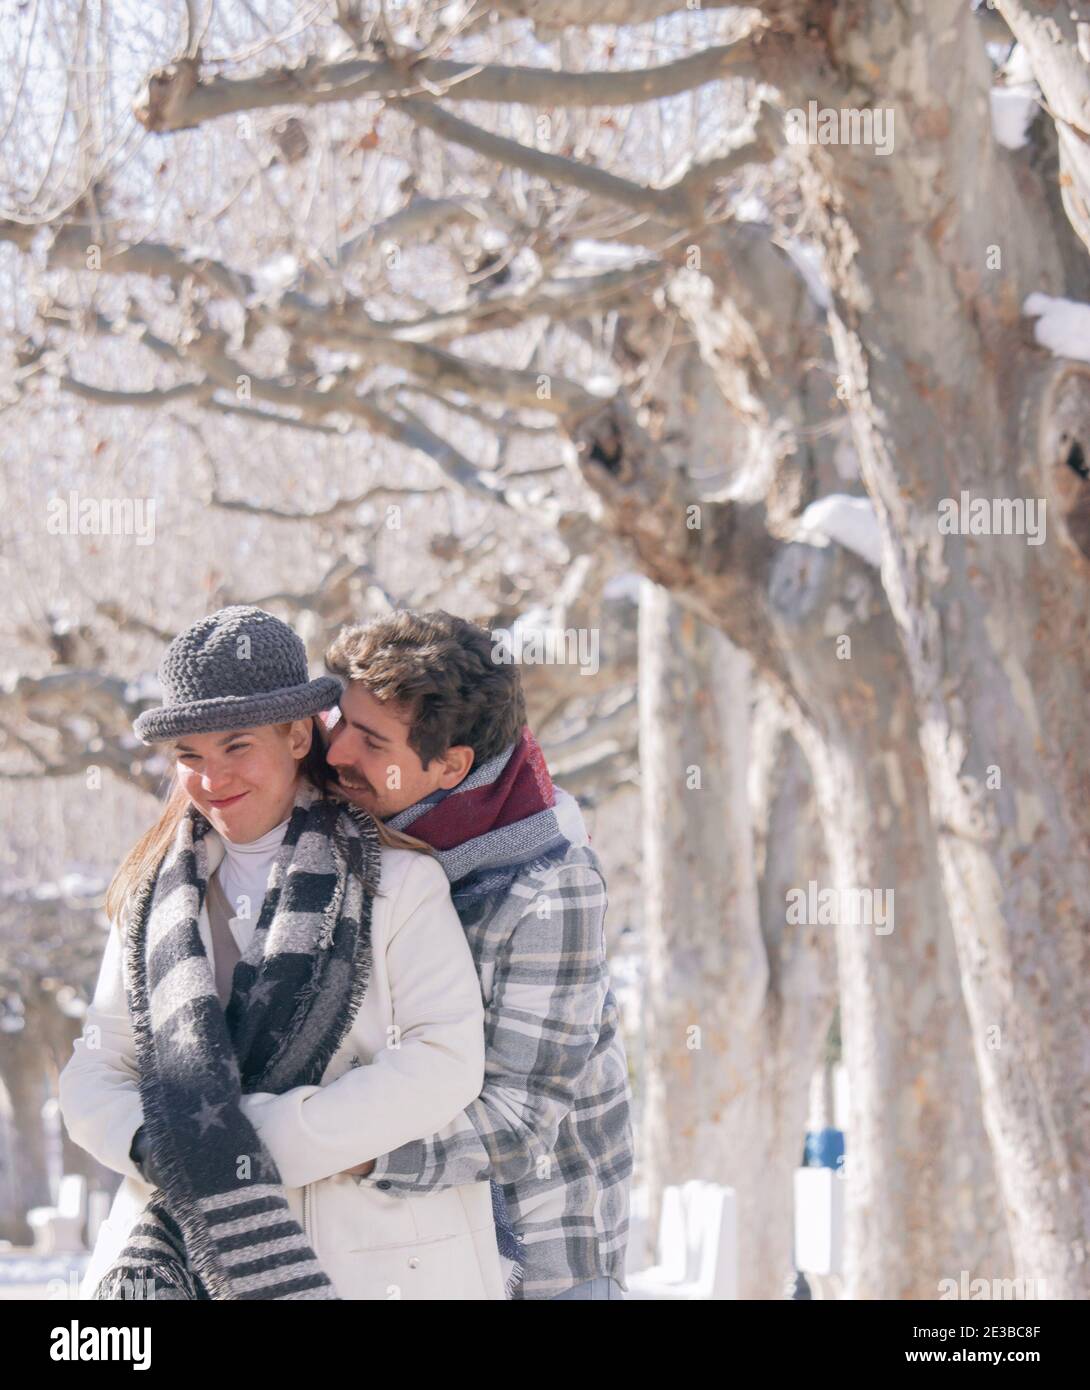 Portrait eines glücklichen romantischen Paares, das Spaß zusammen hat und an einem verschneiten Tag lacht. Winterfotografie Im Freien 2021. Stockfoto